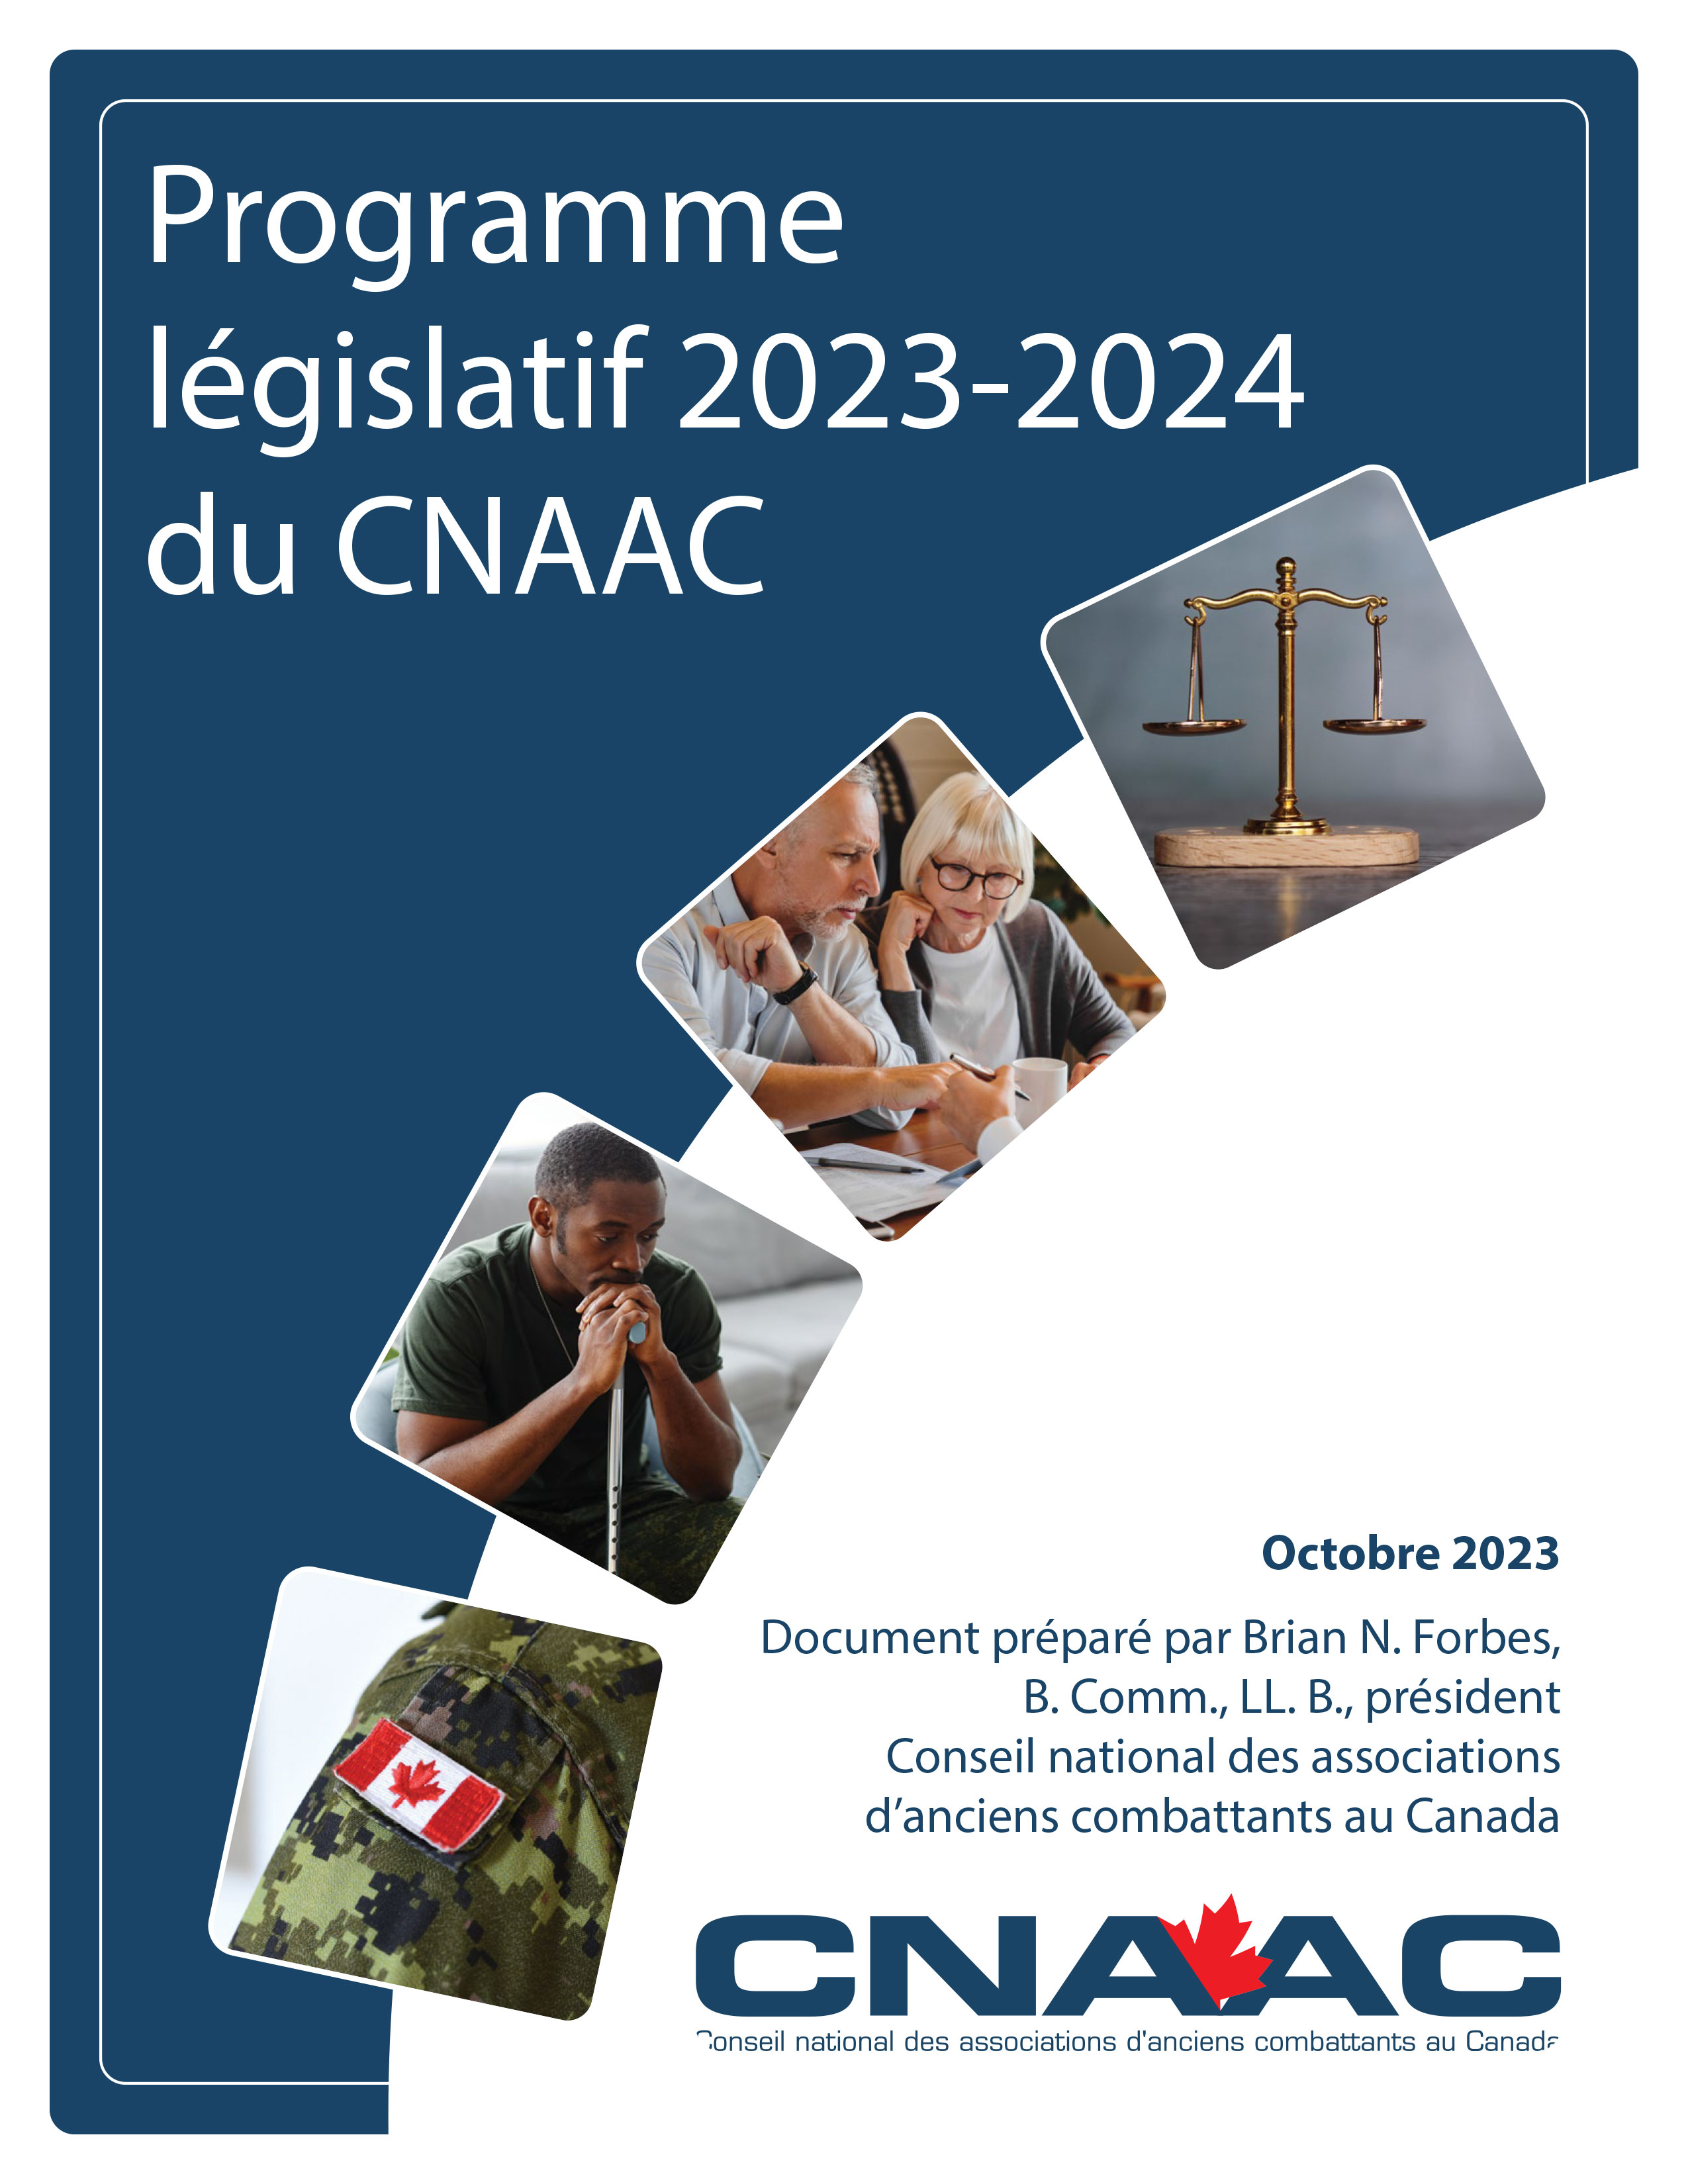 La page couverture du Programme législatif 2023-2024 du CNAAC.